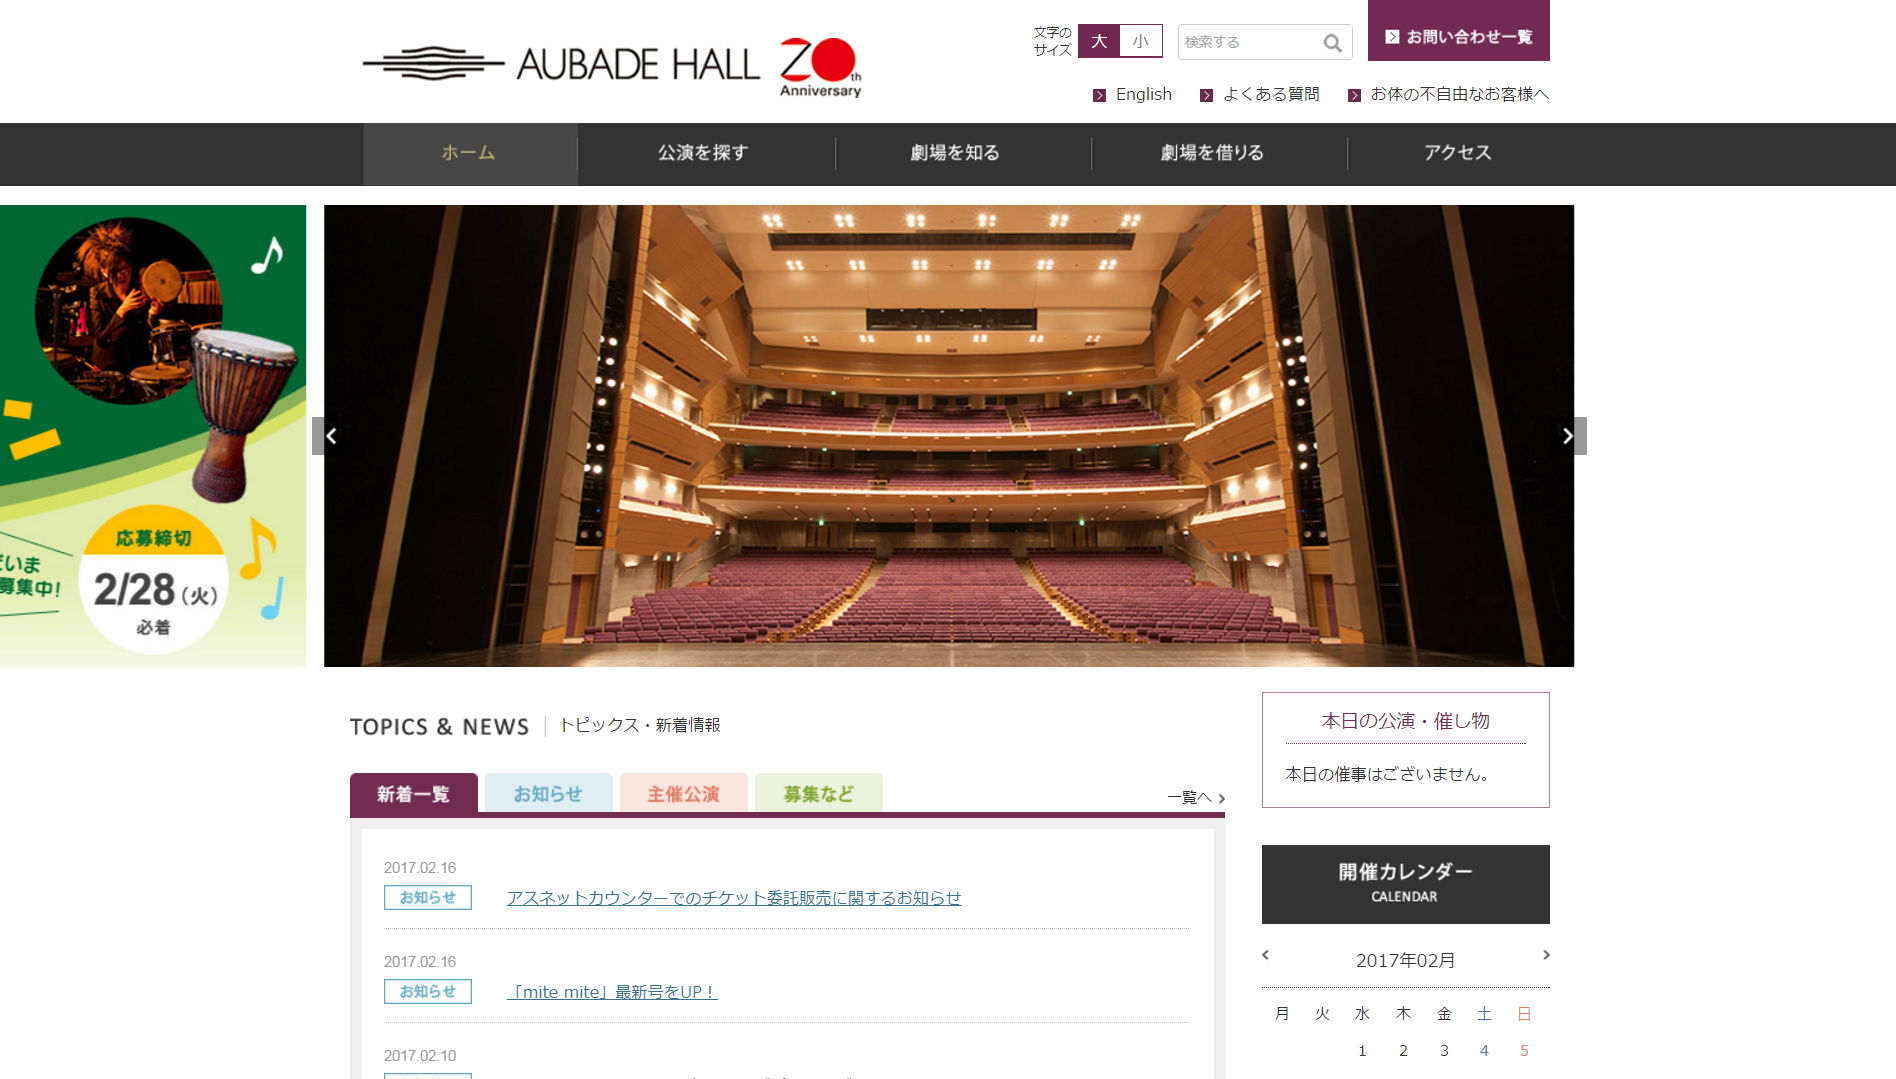 富山市芸術文化ホール(オーバードホール)の座席表と会場情報